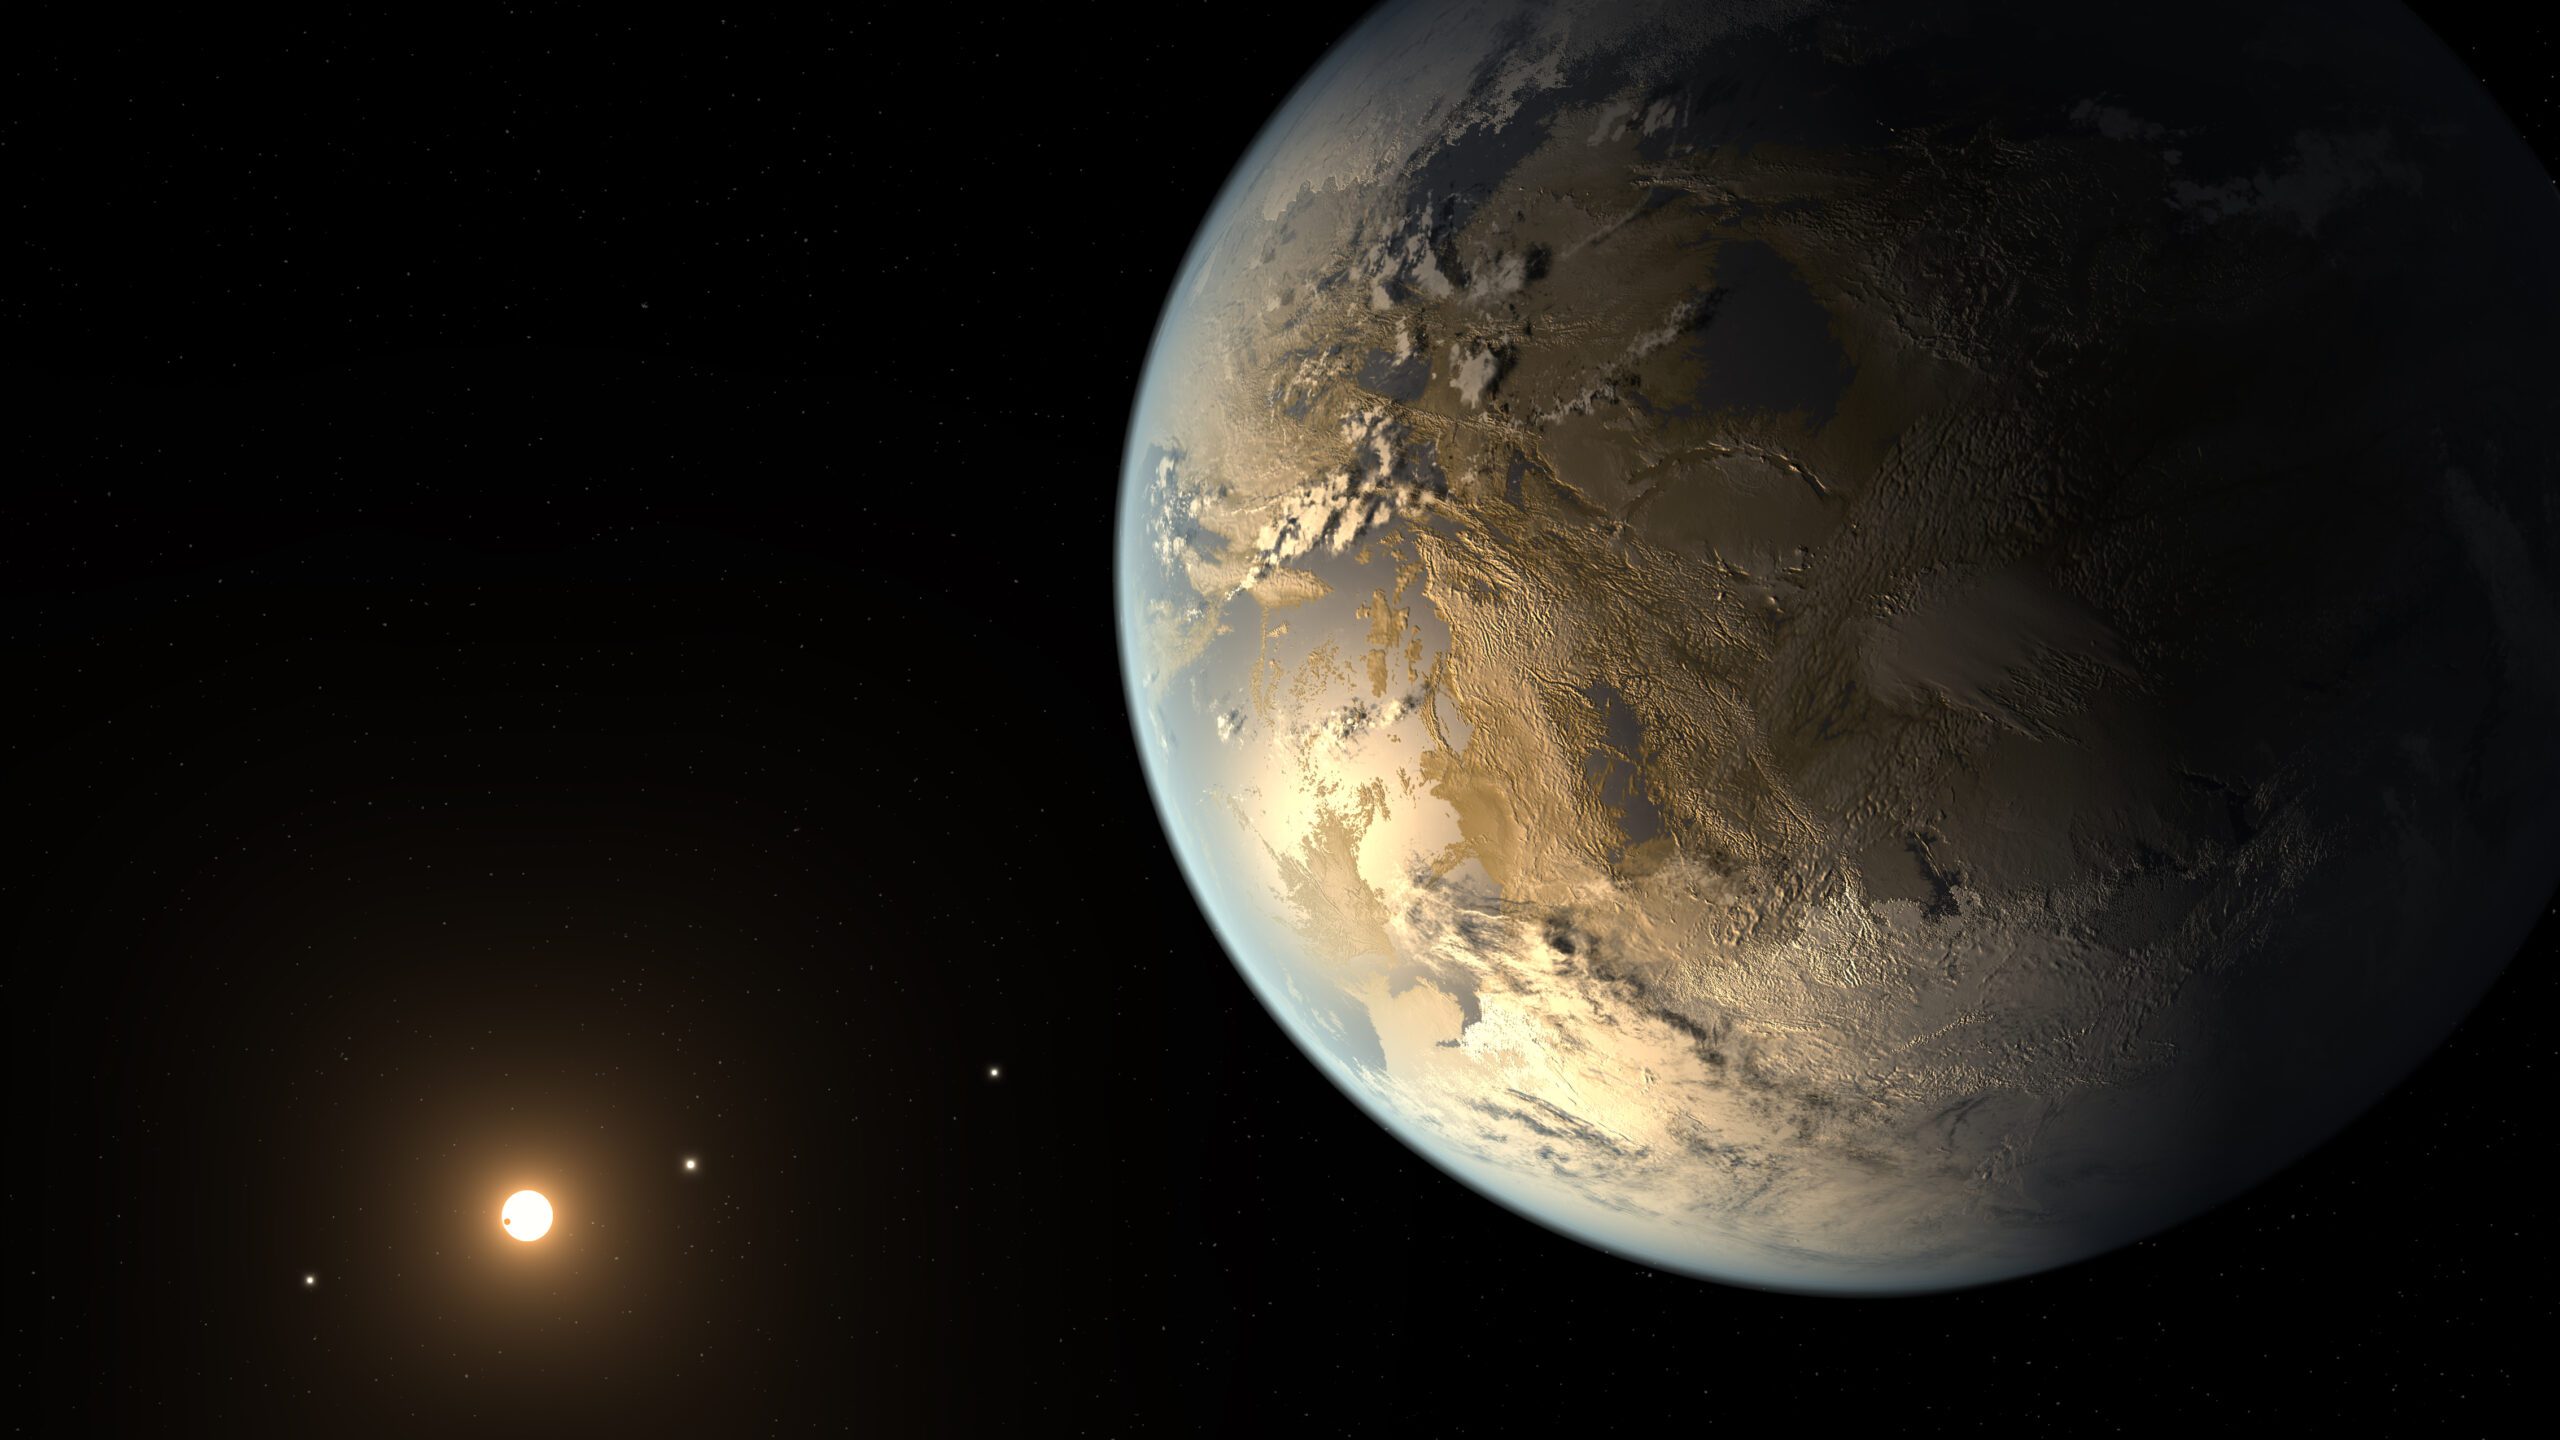 Représentation artistique d'une exoplanète semblable à la Terre. Crédit : NASA Ames / SETI Institute / JPL-Caltech